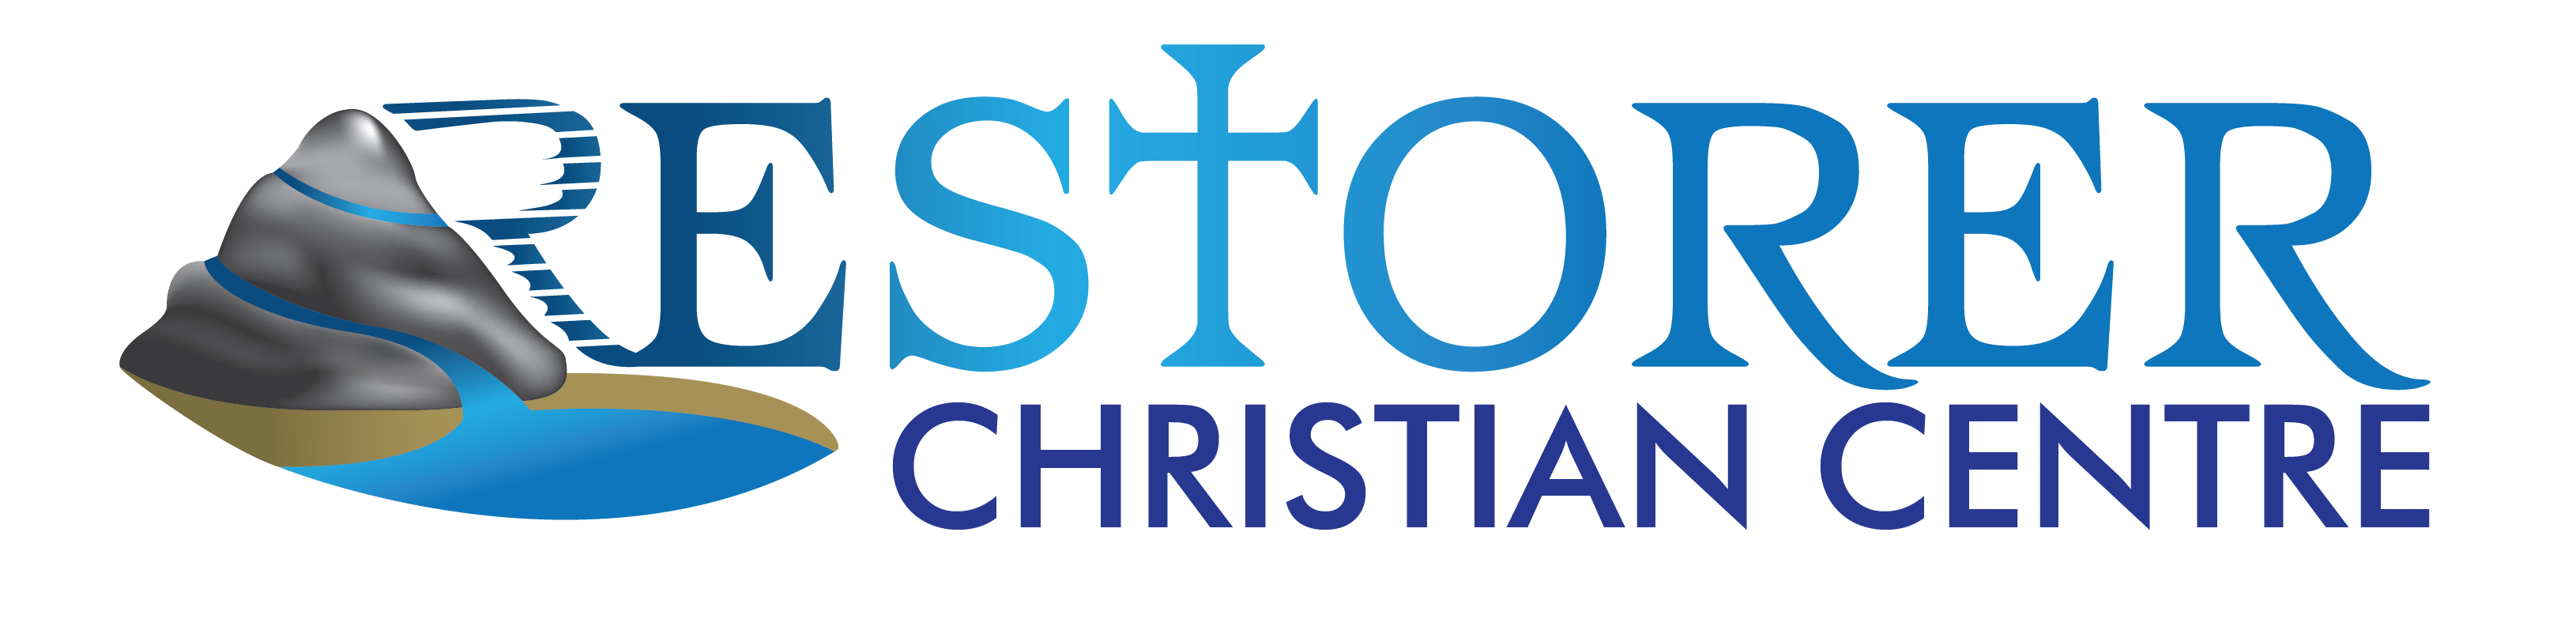 Restorer Christian Centre